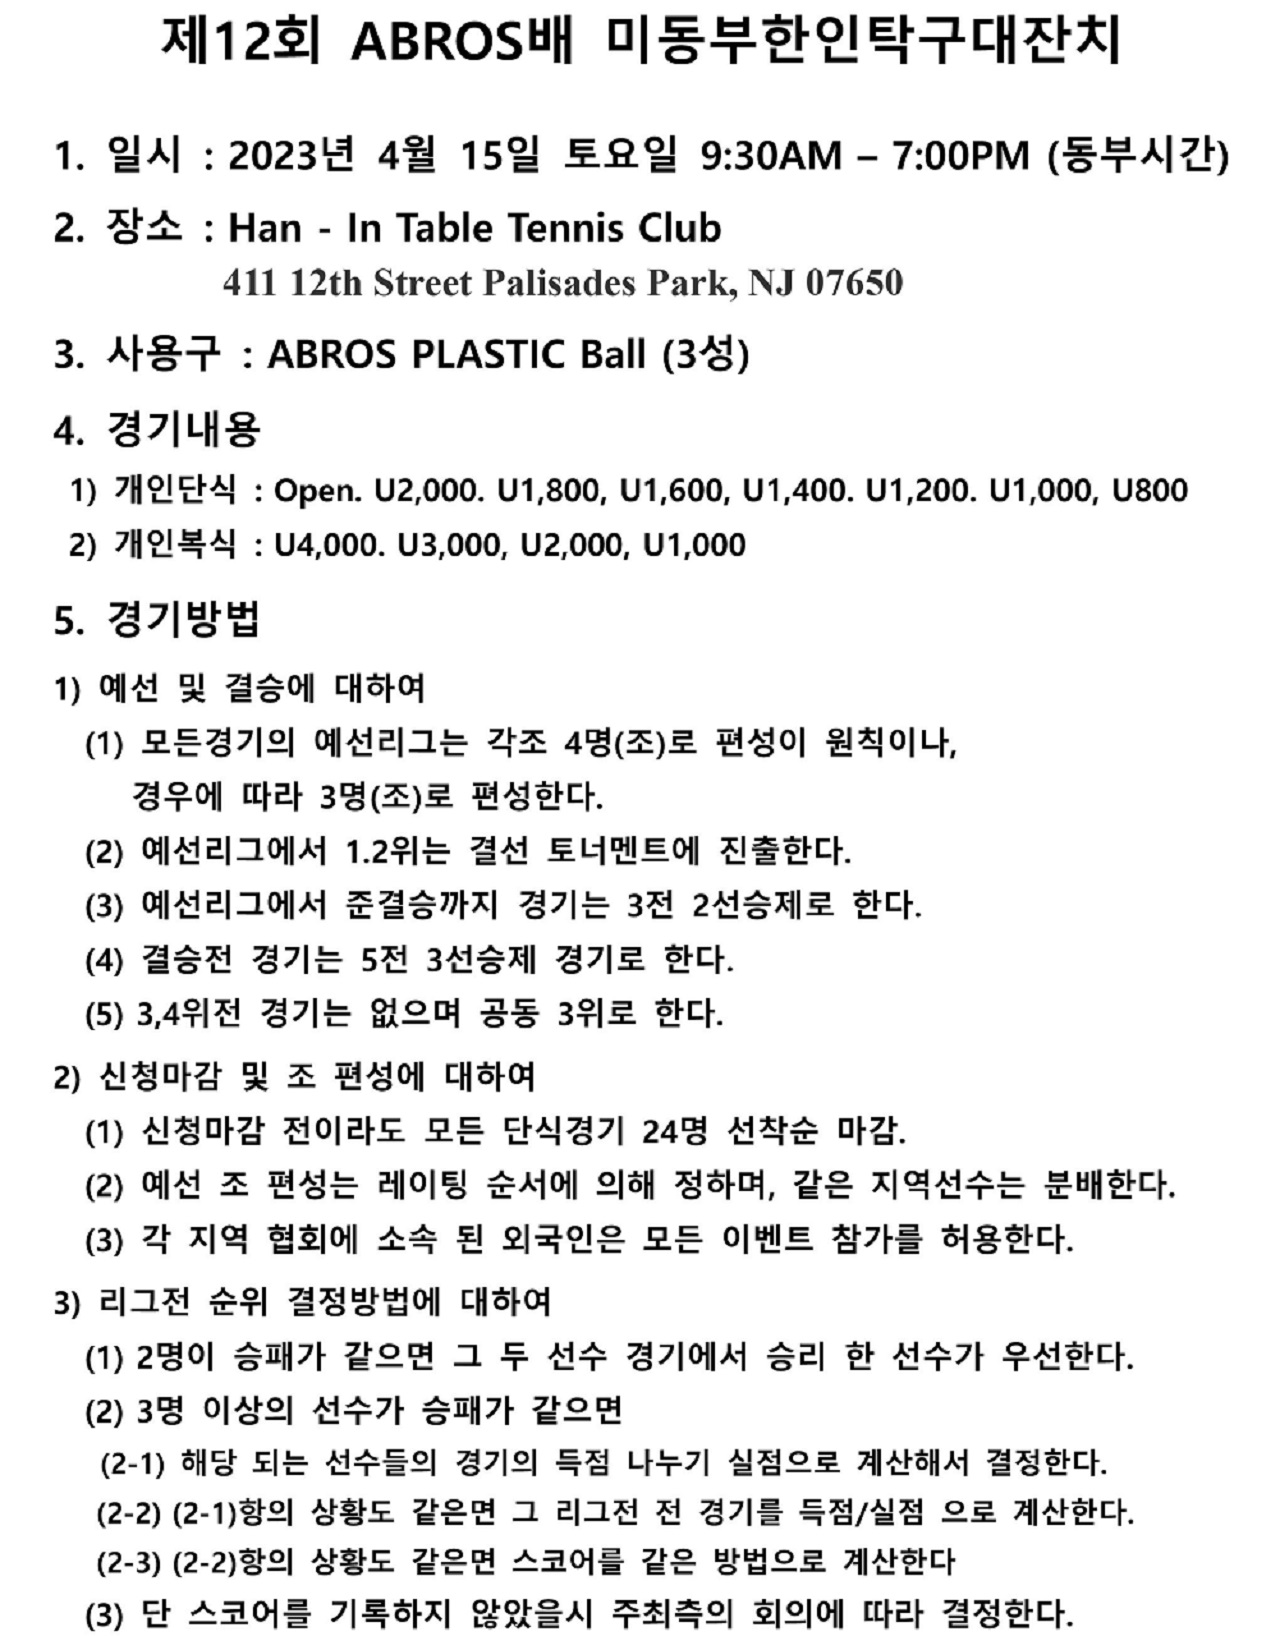 제12회 미동부 한인 탁구대잔치 요강-1.jpg